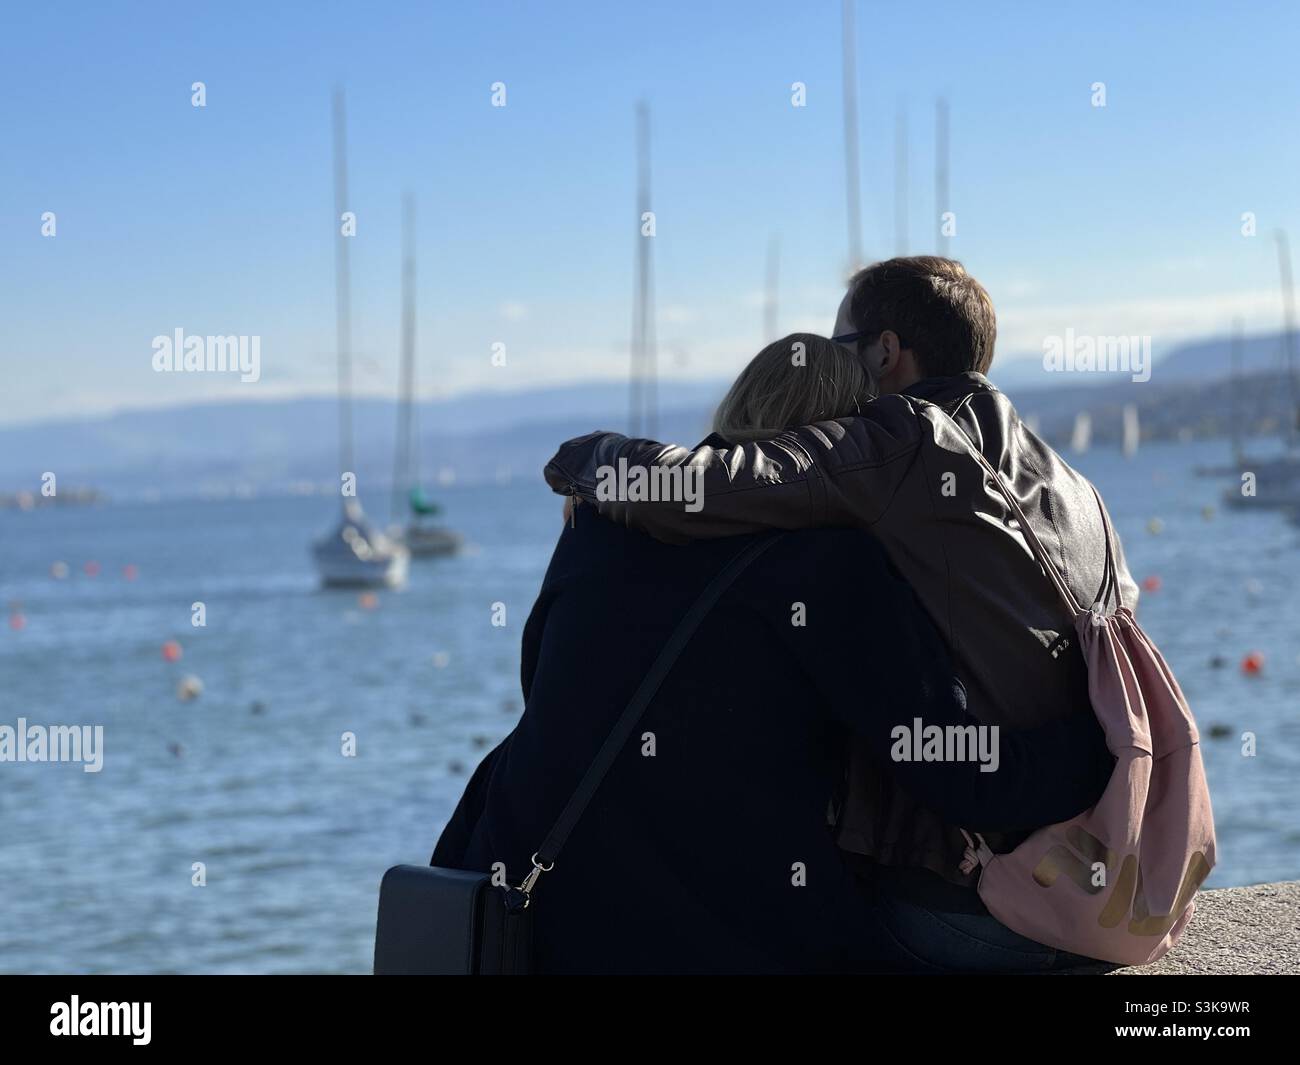 Les jeunes couples hétérosexuels se cuddling ensemble dans la vue arrière.Ils sont assis sur une barrière observant le lac de Zurich, en Suisse. Banque D'Images